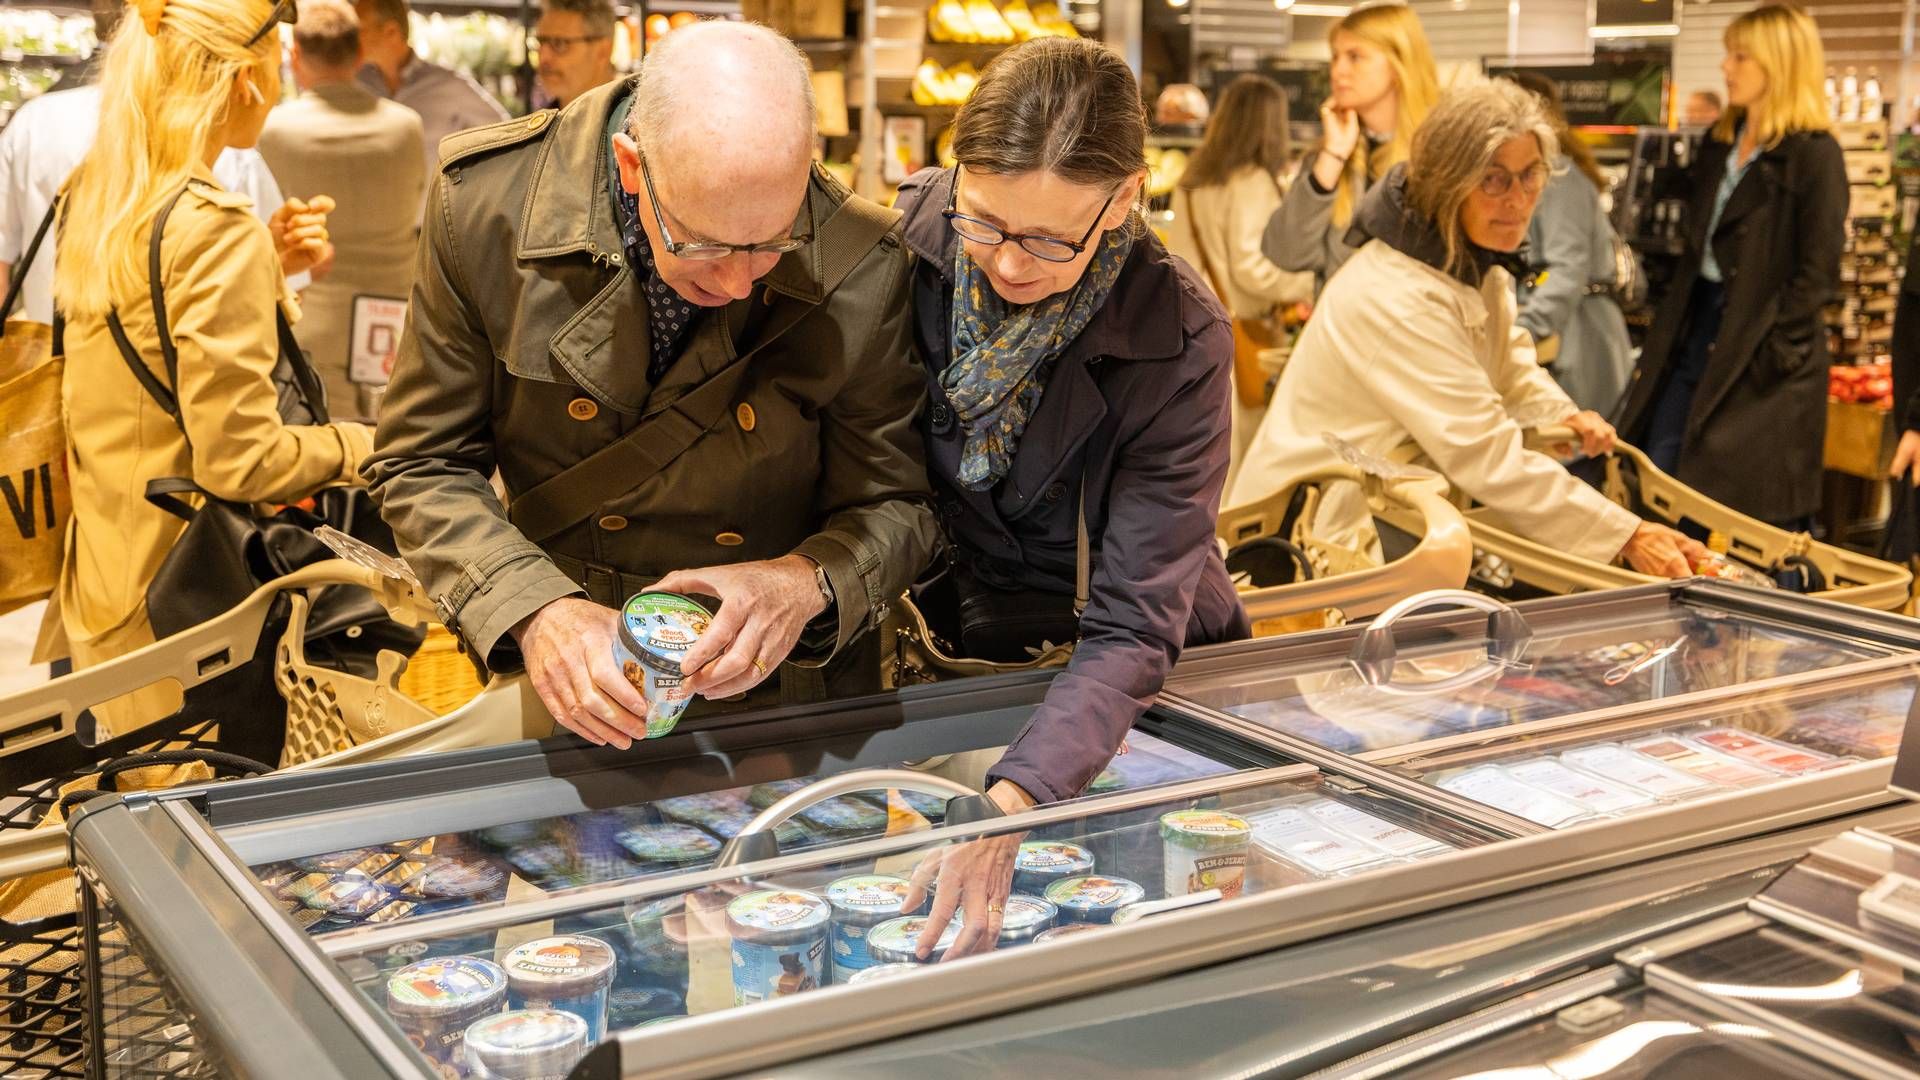 Selvom forbrugerne køber mere discount, efterspørger en stor andel stadig specialvarer og indsigtsfuldt personale, vurderer Retail Institute Scandinavia. | Foto: Mikal Schlosser